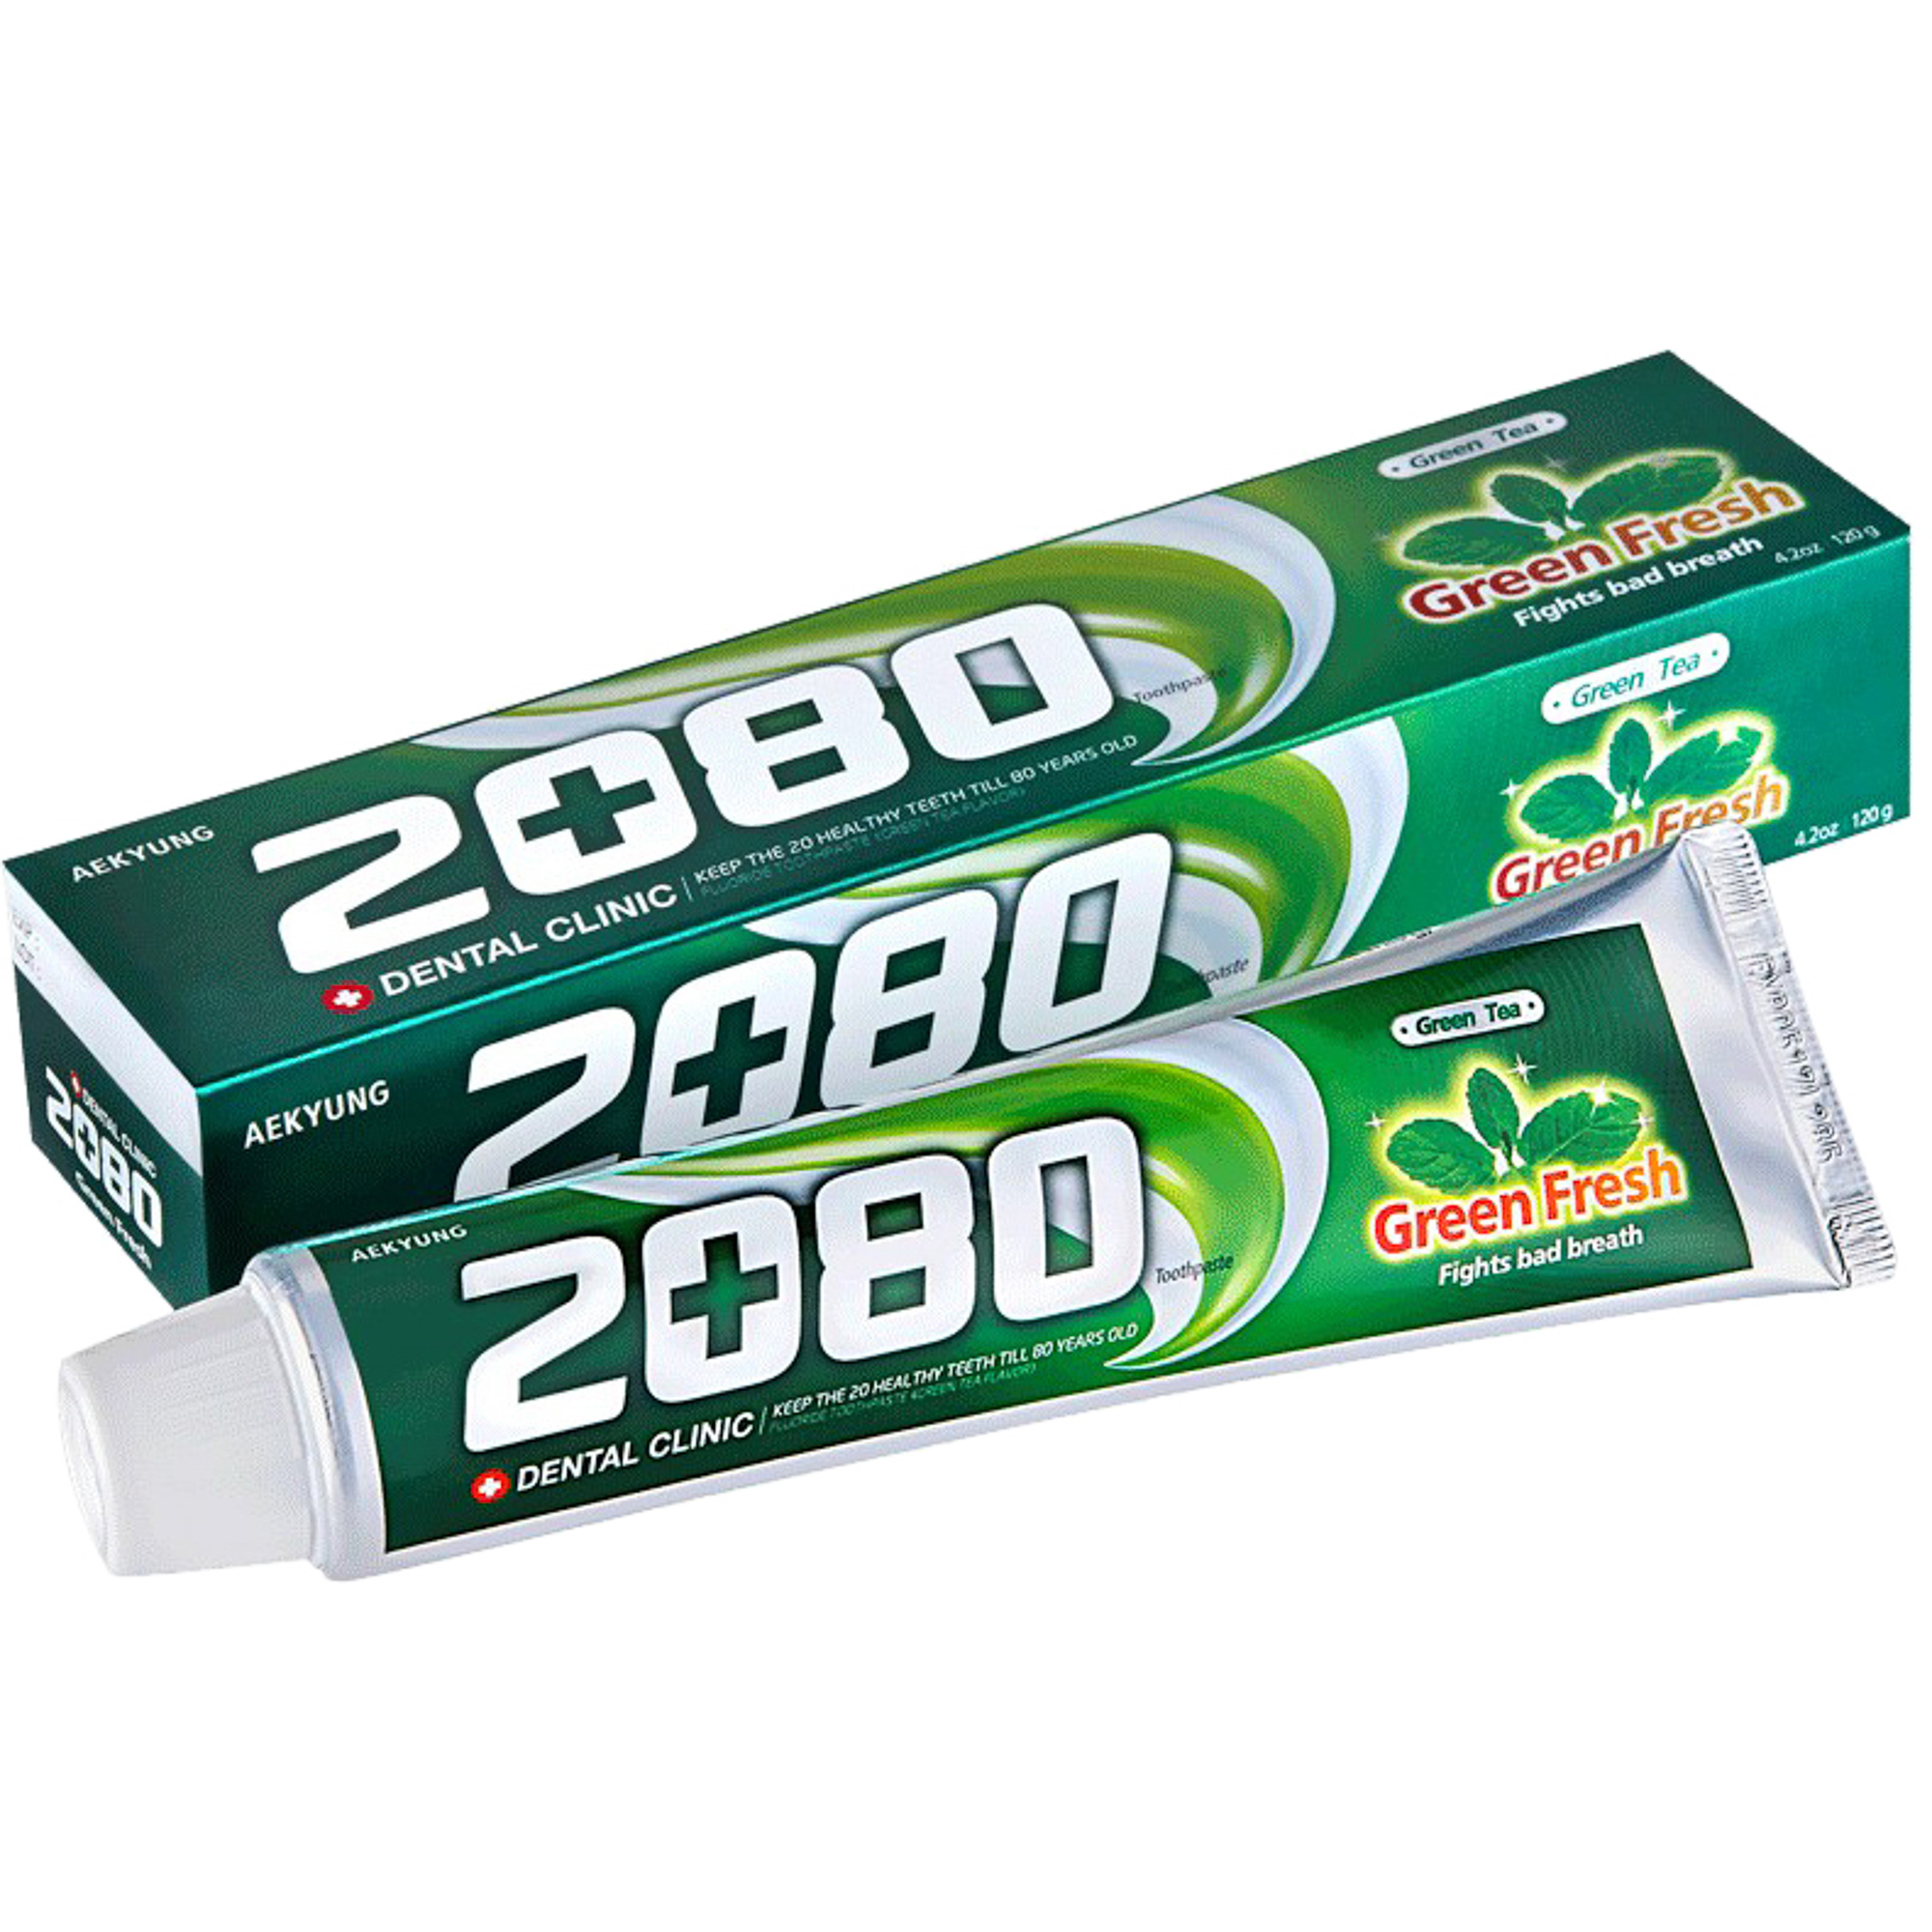 Зубная паста Kerasys Dental Clinic 2080 Green Fresh Зеленый чай 120 г туалетная жидкость thetford b fresh green 2 л